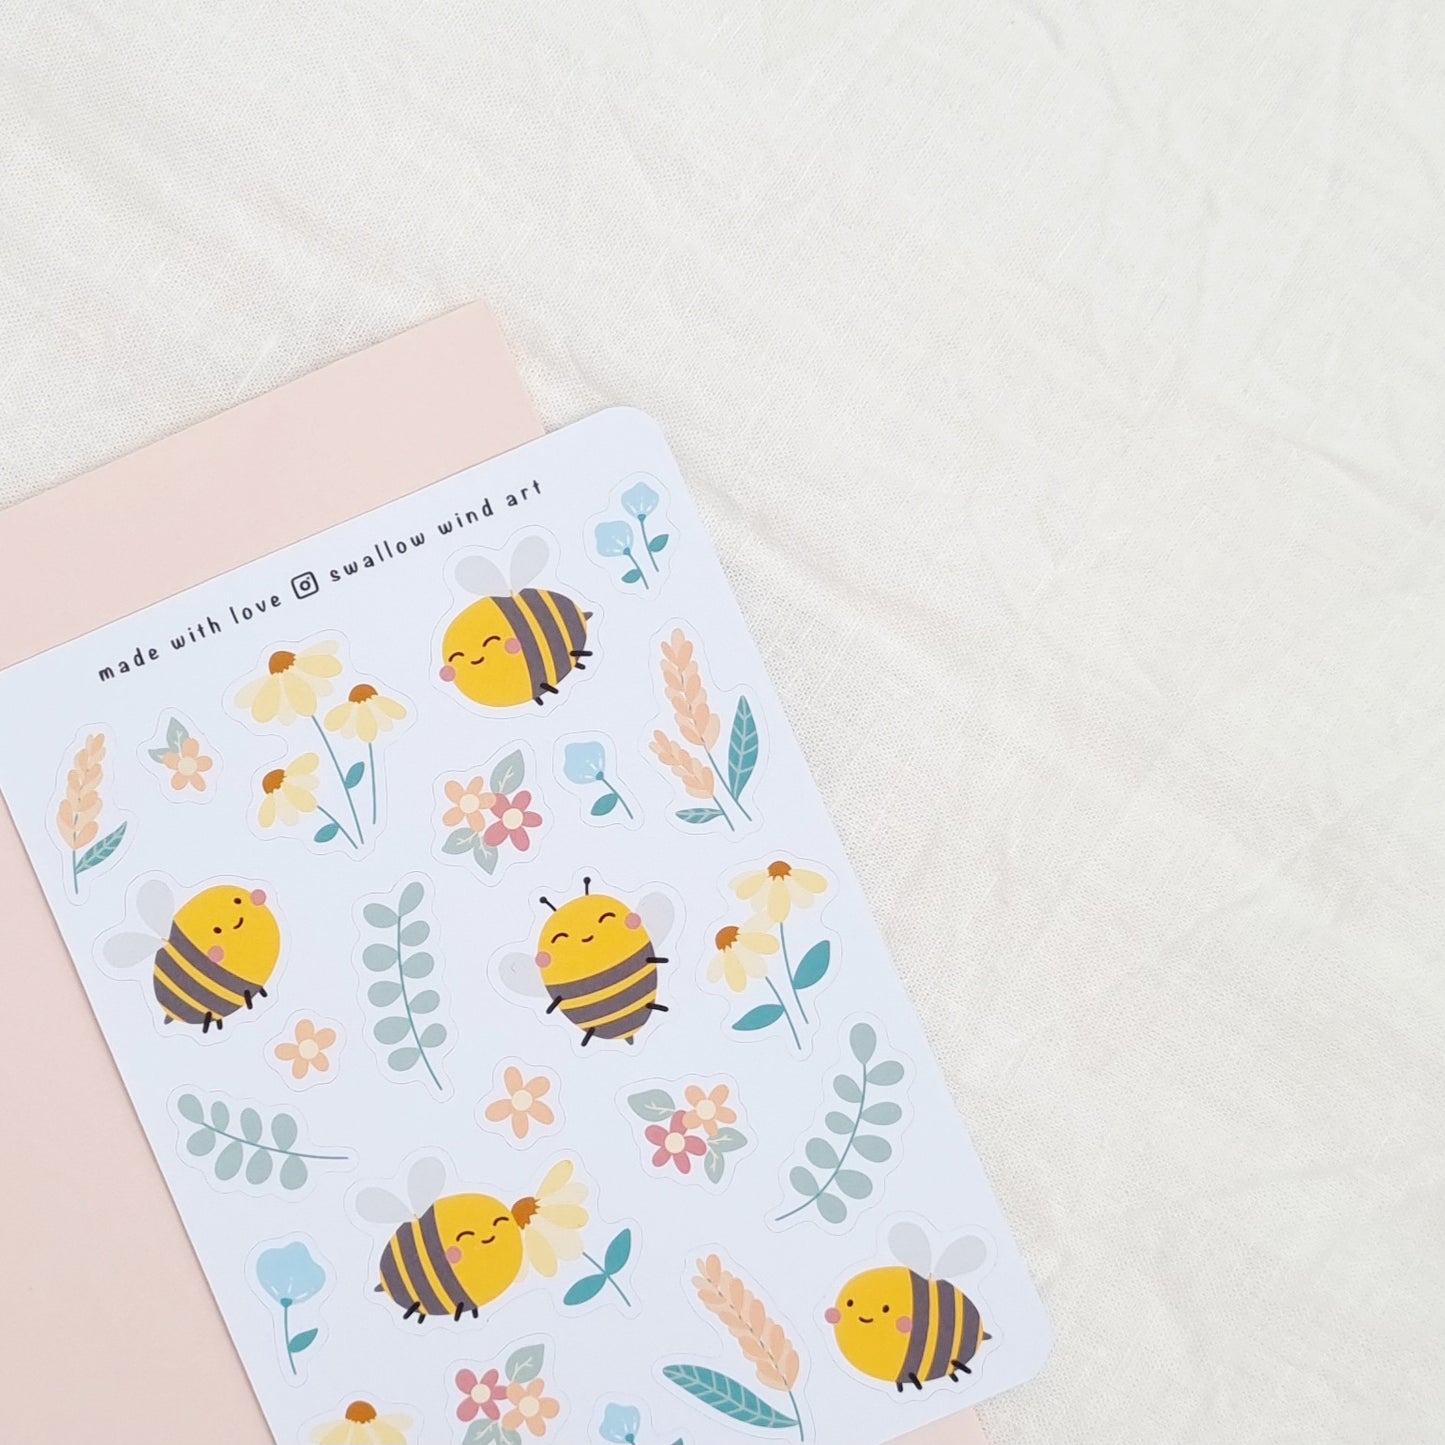 Bees in a Garden Sticker Sheet